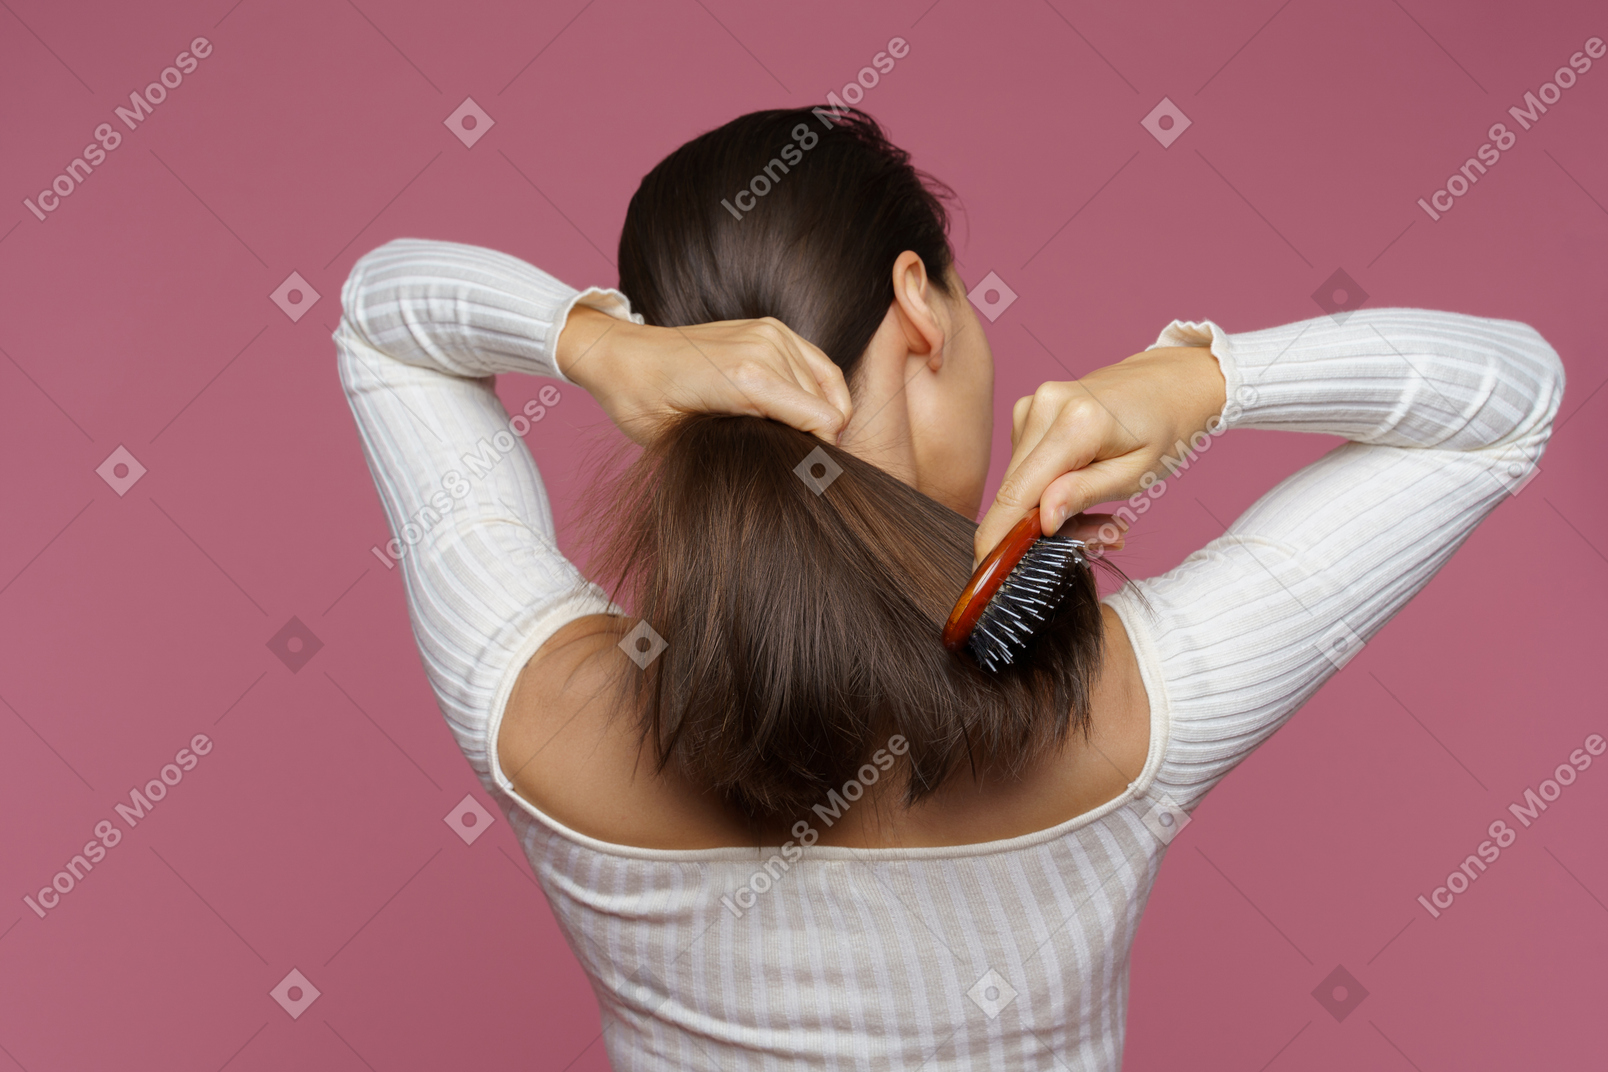 Vue arrière d'une femme aux cheveux bruns se peignant les cheveux